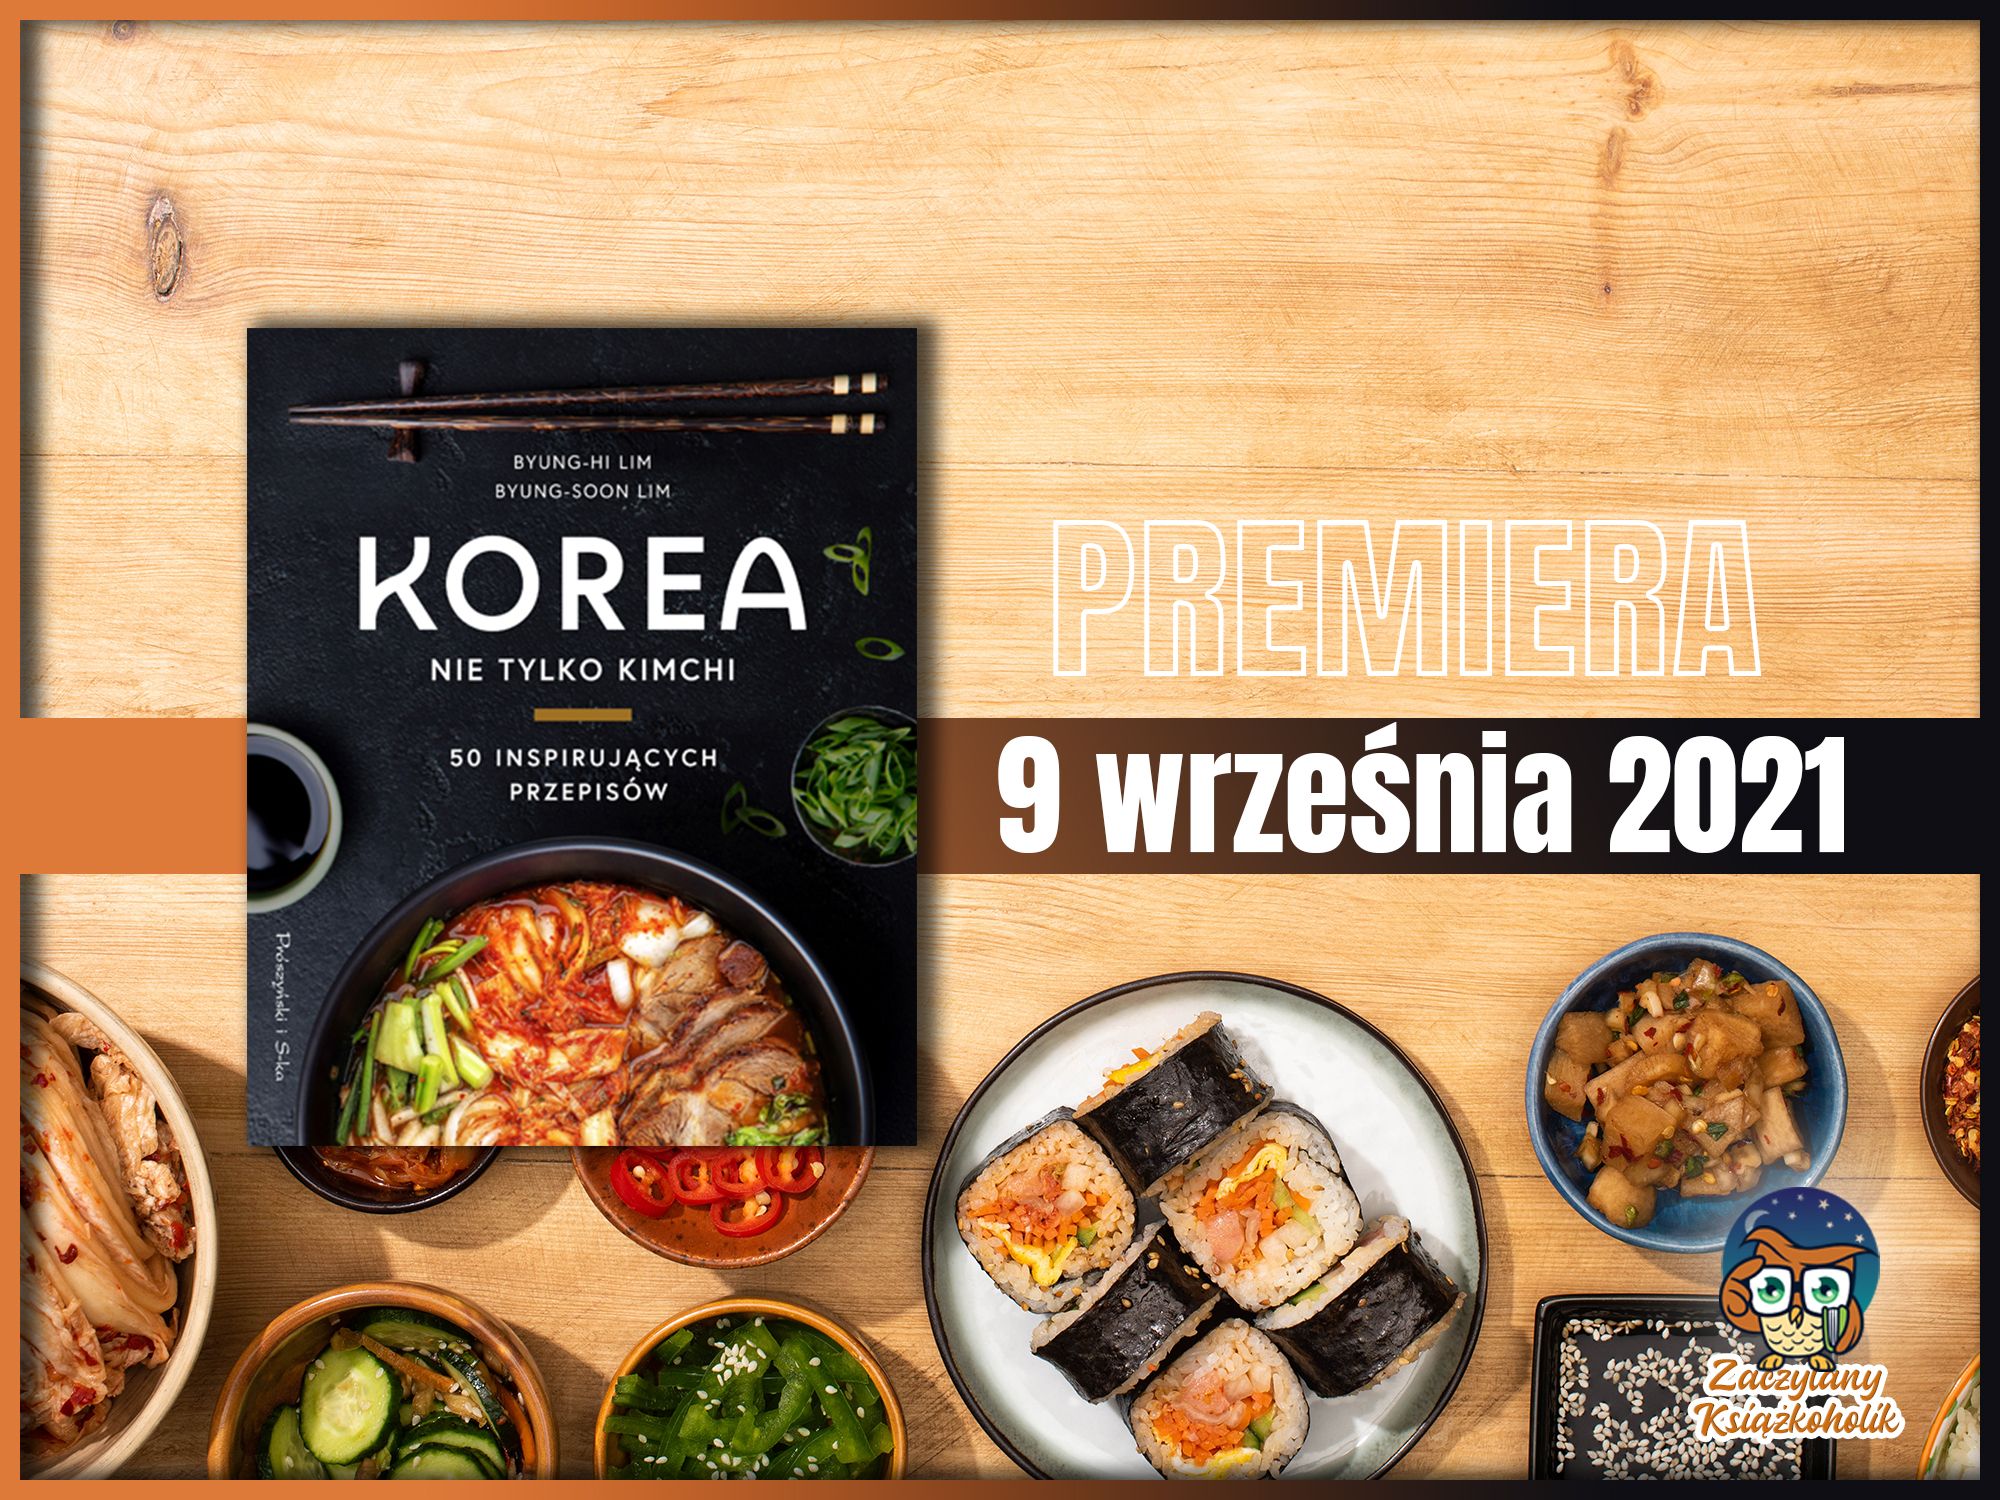 Korea. Nie tylko kimchi, Byung-Hi Lim , Byung-Soon Lim, zaczytanyksiazkoholik.pl